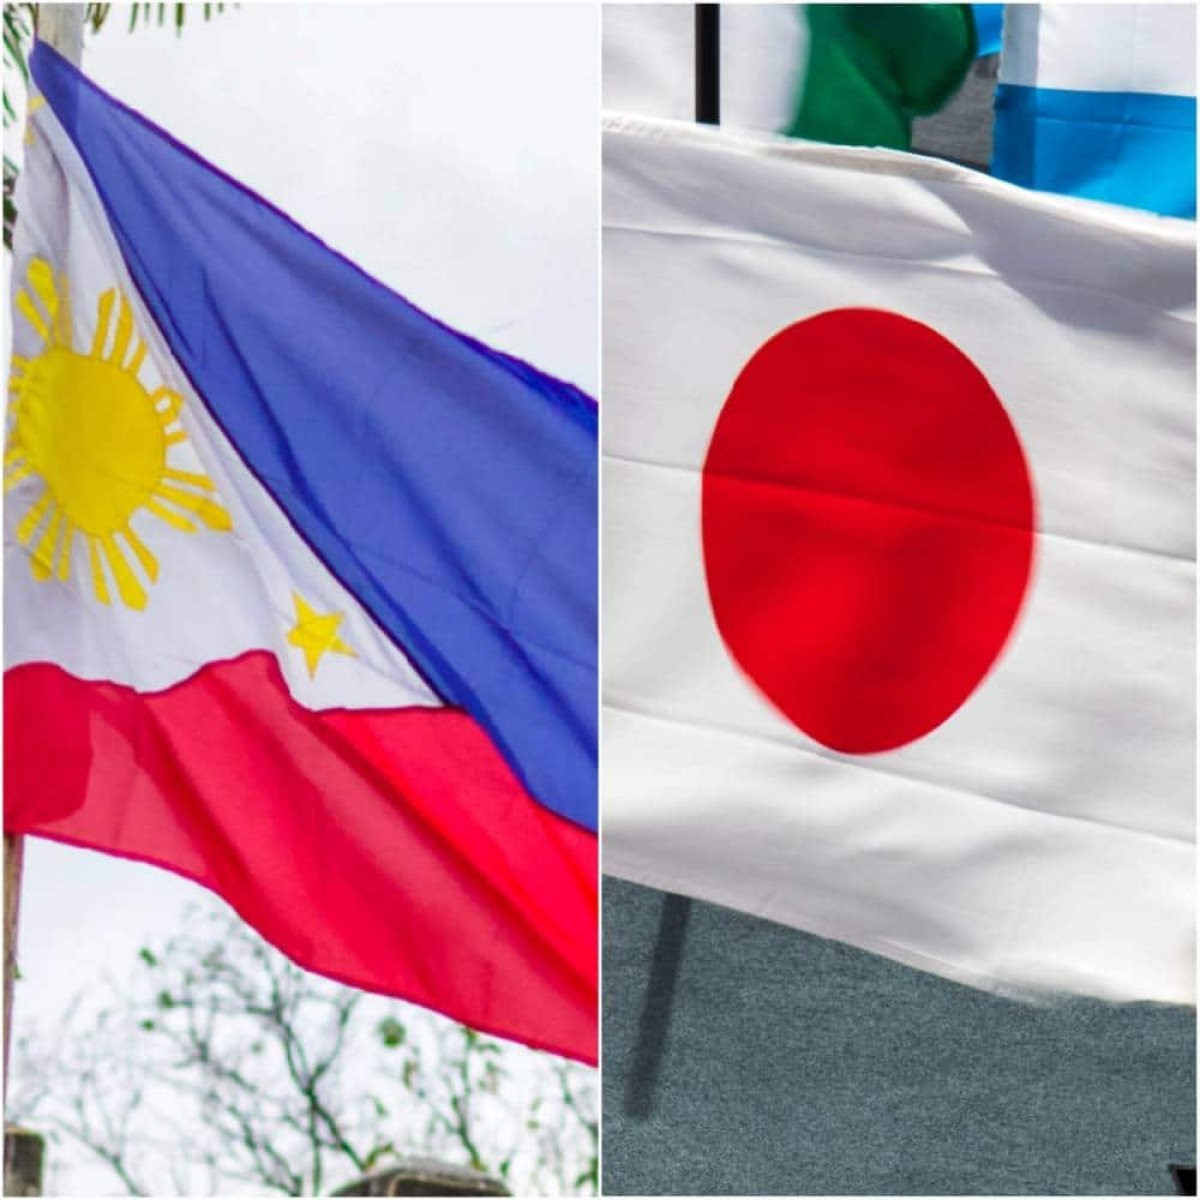 Đối thoại 2+2 Philippines là quá trình trao đổi chuyên sâu giữa các nhà lãnh đạo quân sự và ngoại giao của hai quốc gia. Bằng cách tìm kiếm sự hiểu biết và tôn trọng lẫn nhau, Philippines và Việt Nam đang cùng nhau xây dựng một môi trường hòa bình, an toàn và phát triển. Đây là nền tảng vững chắc cho mối quan hệ đối tác chiến lược giữa hai nước.